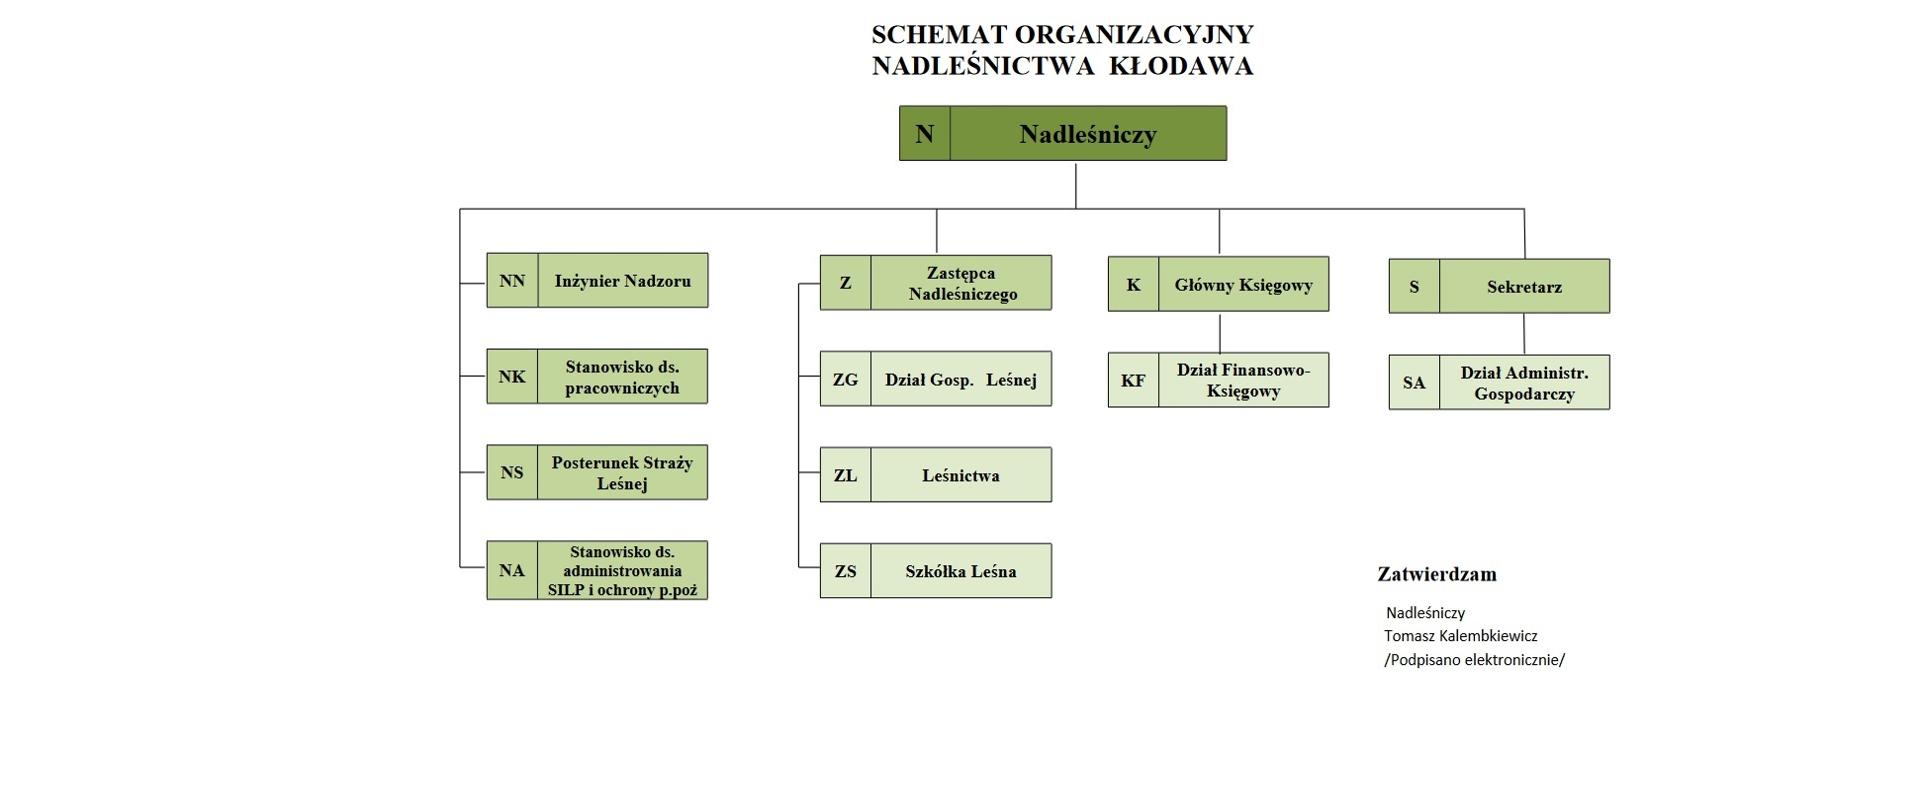 Schemat organizacyjny Nadleśnictwa Kłodawa